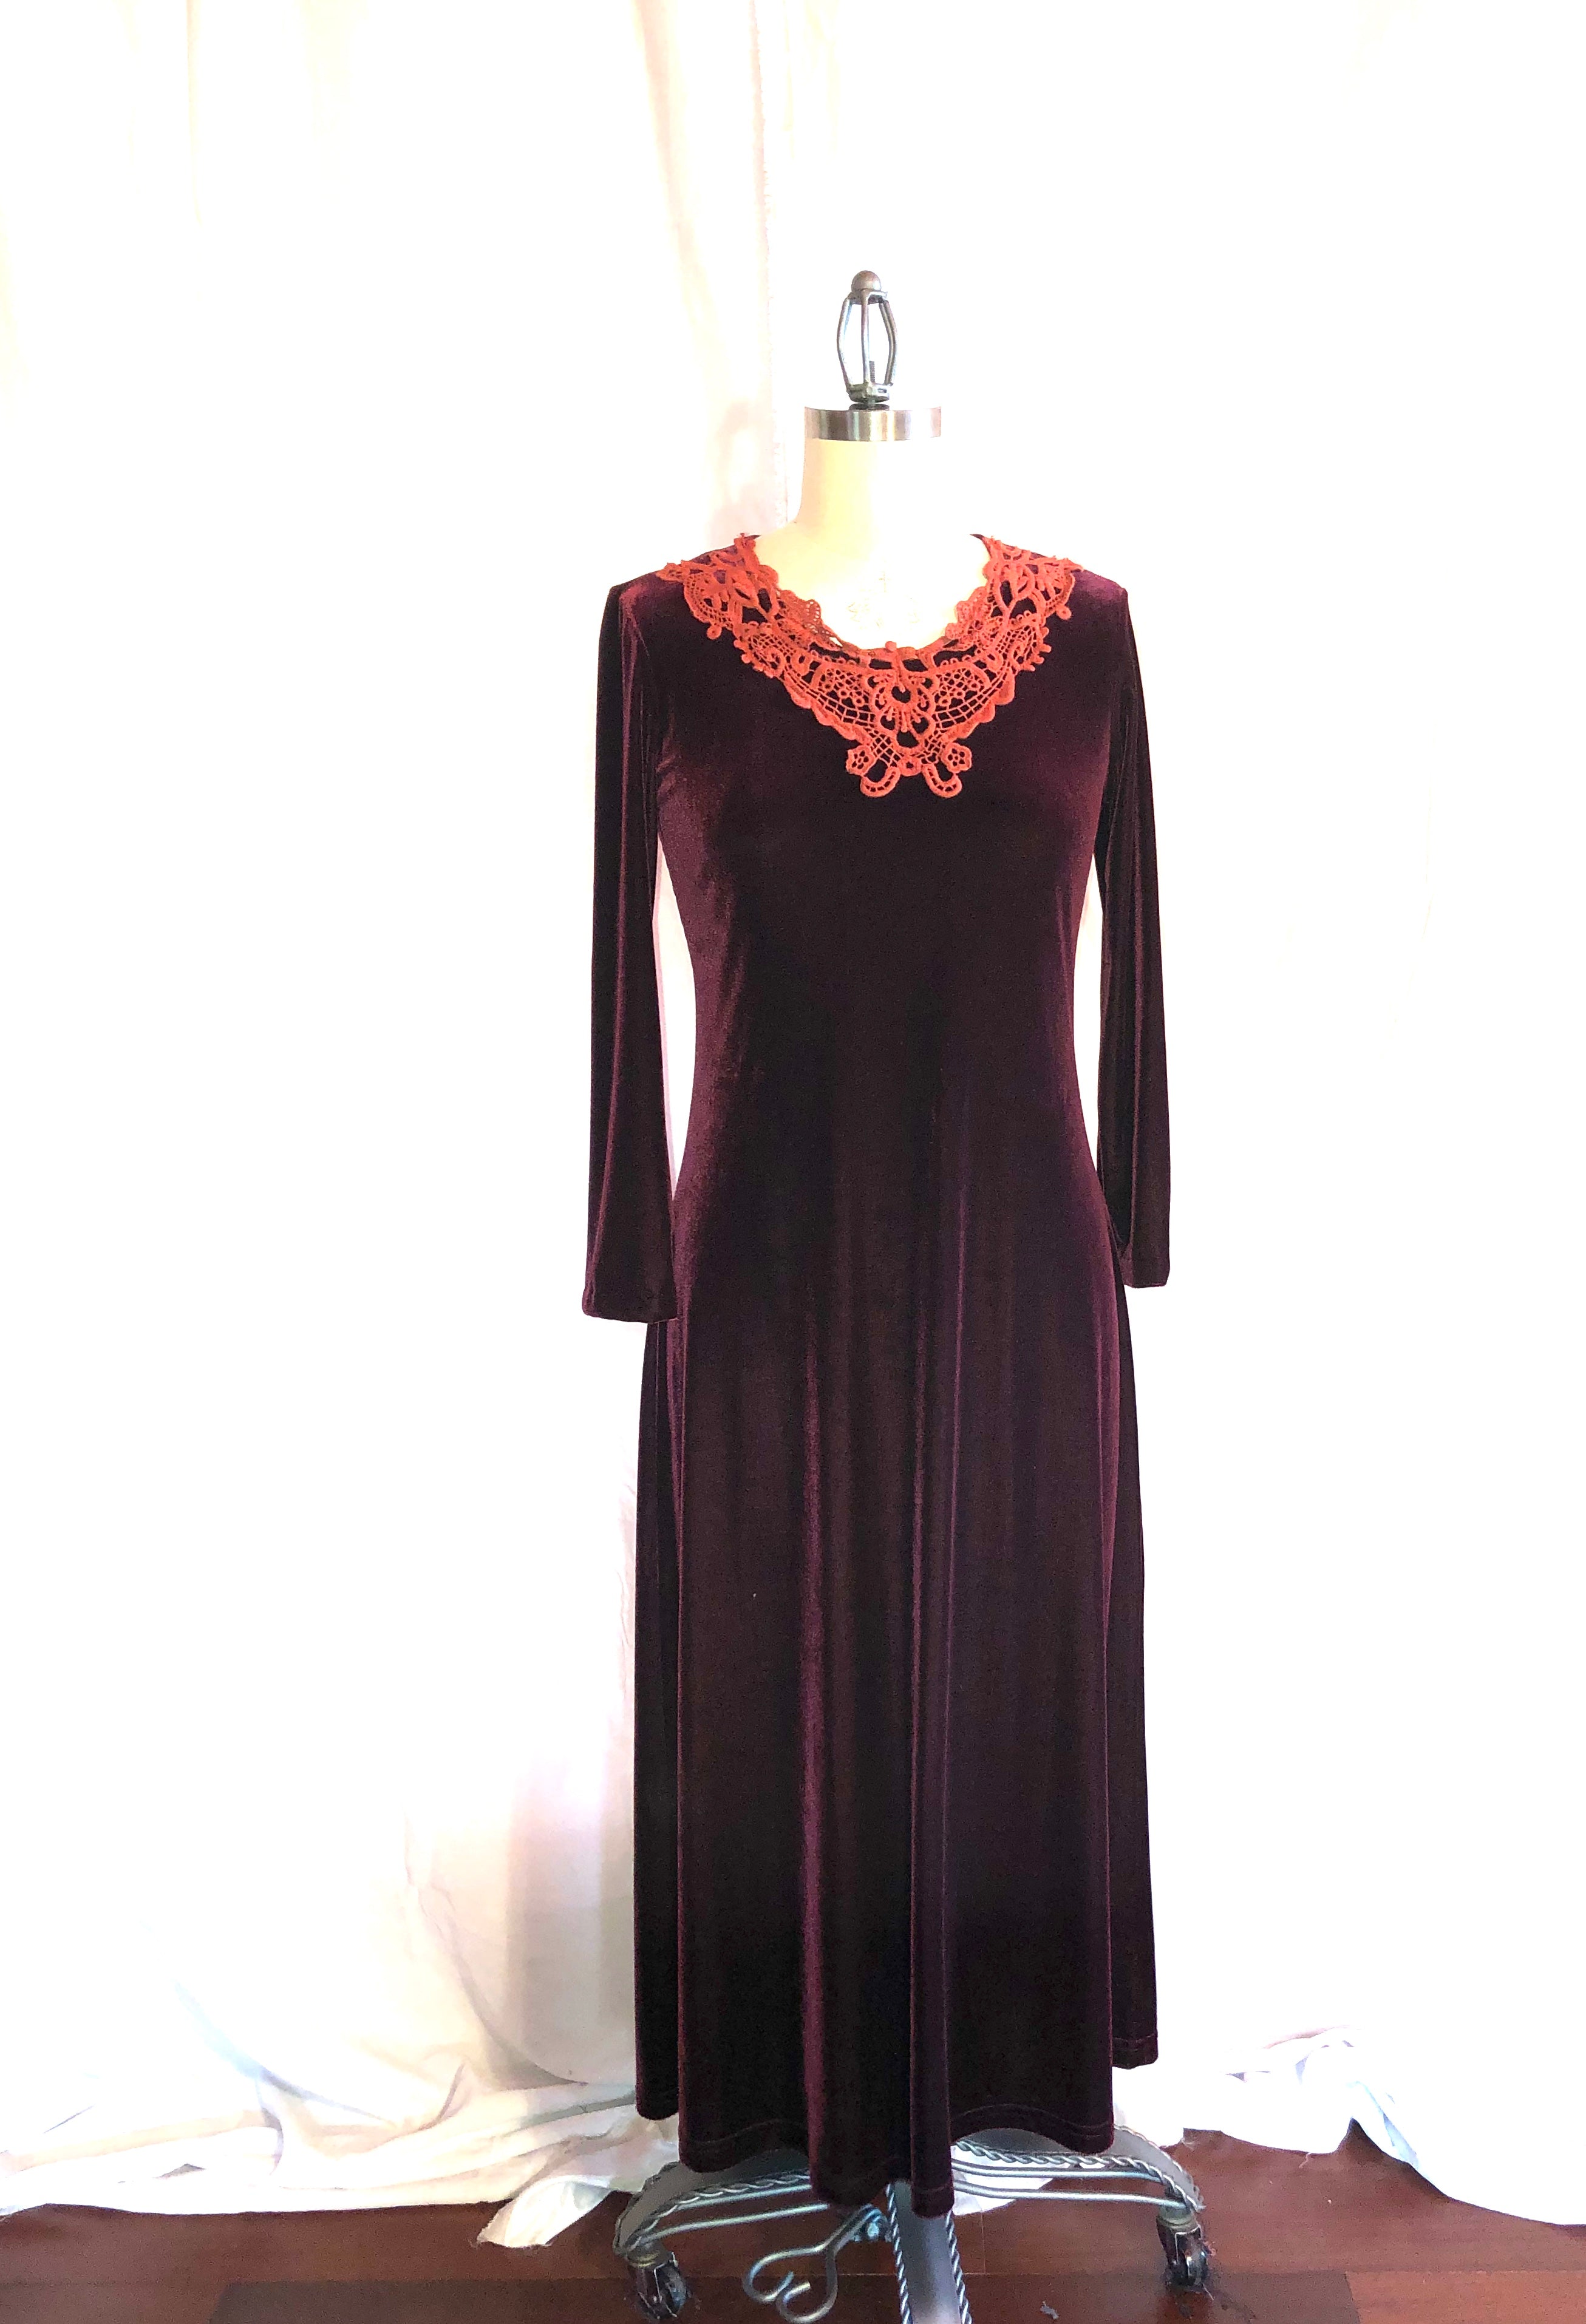 Handmade Long Burgundy Velvet Dress